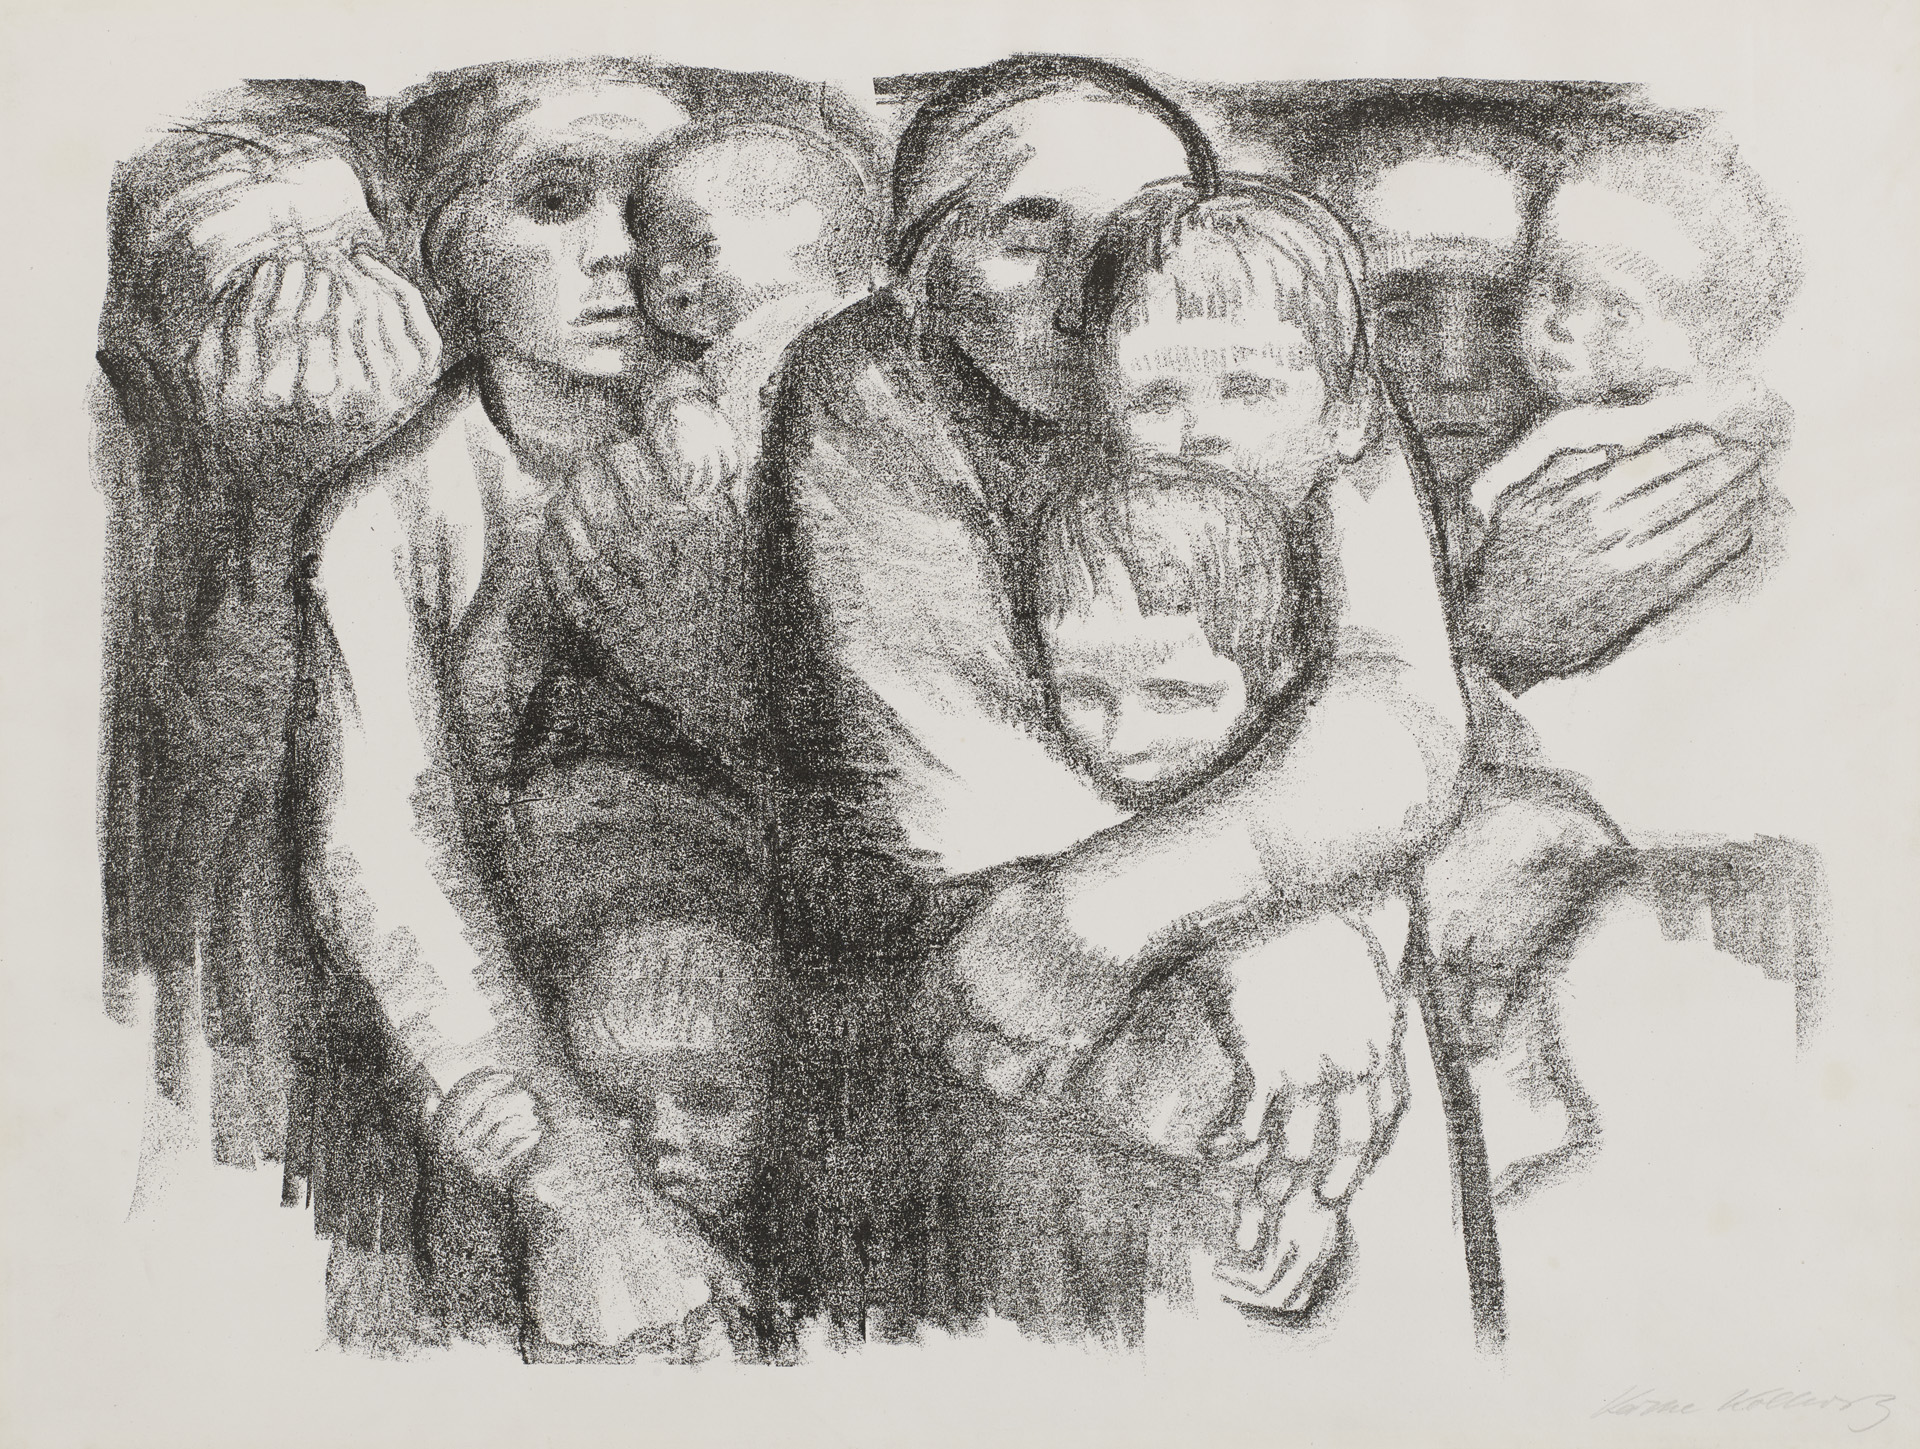 Käthe Kollwitz, Mütter, verworfene zweite Fassung von Blatt 6 der Folge »Krieg«, 1919, Kreidelithographie (Umdruck), Kn 140 I c